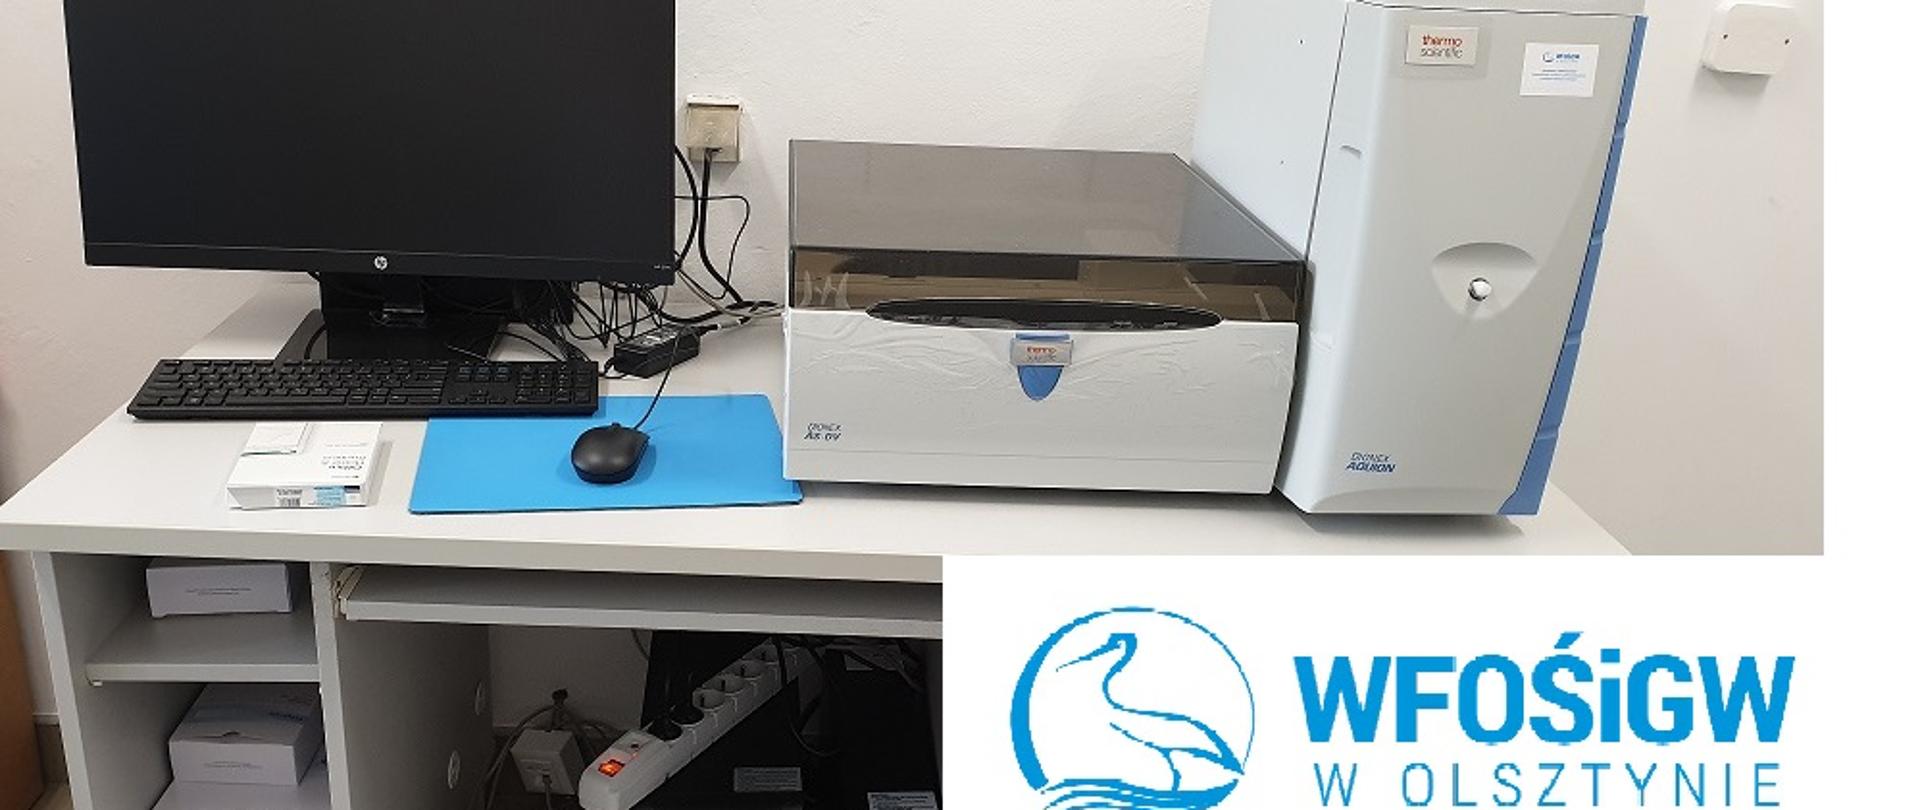 Chromatograf jonowy stojący na biurku w laboratorium, a także komputer z monitorem oraz logo WFOŚiGW 